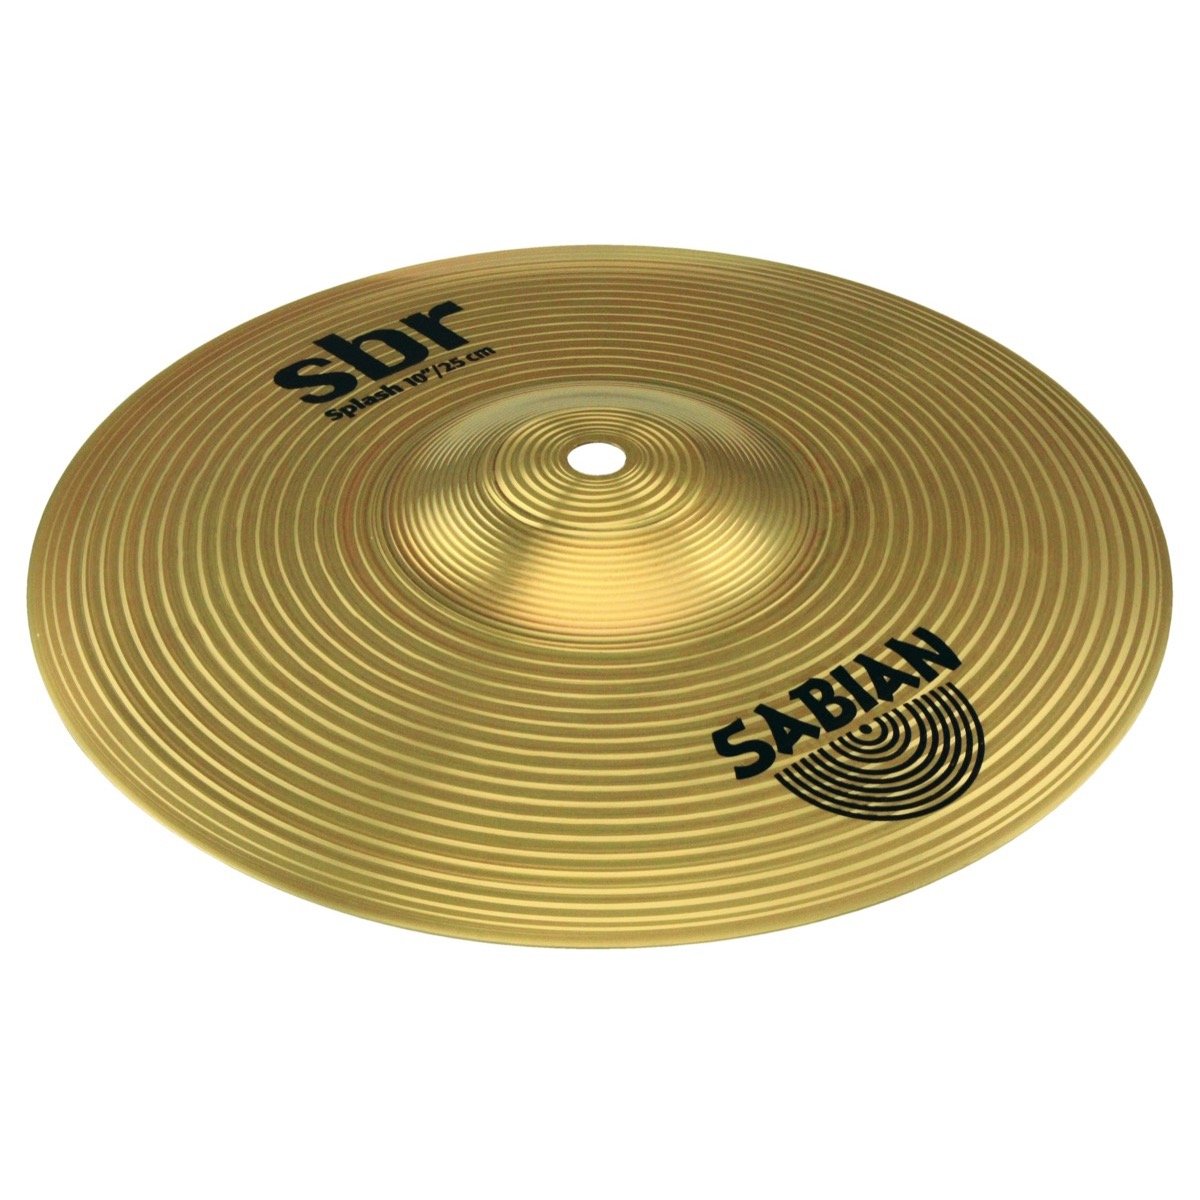 Sabian SBR Splash Cymbal, SBR1005, 10 Inch